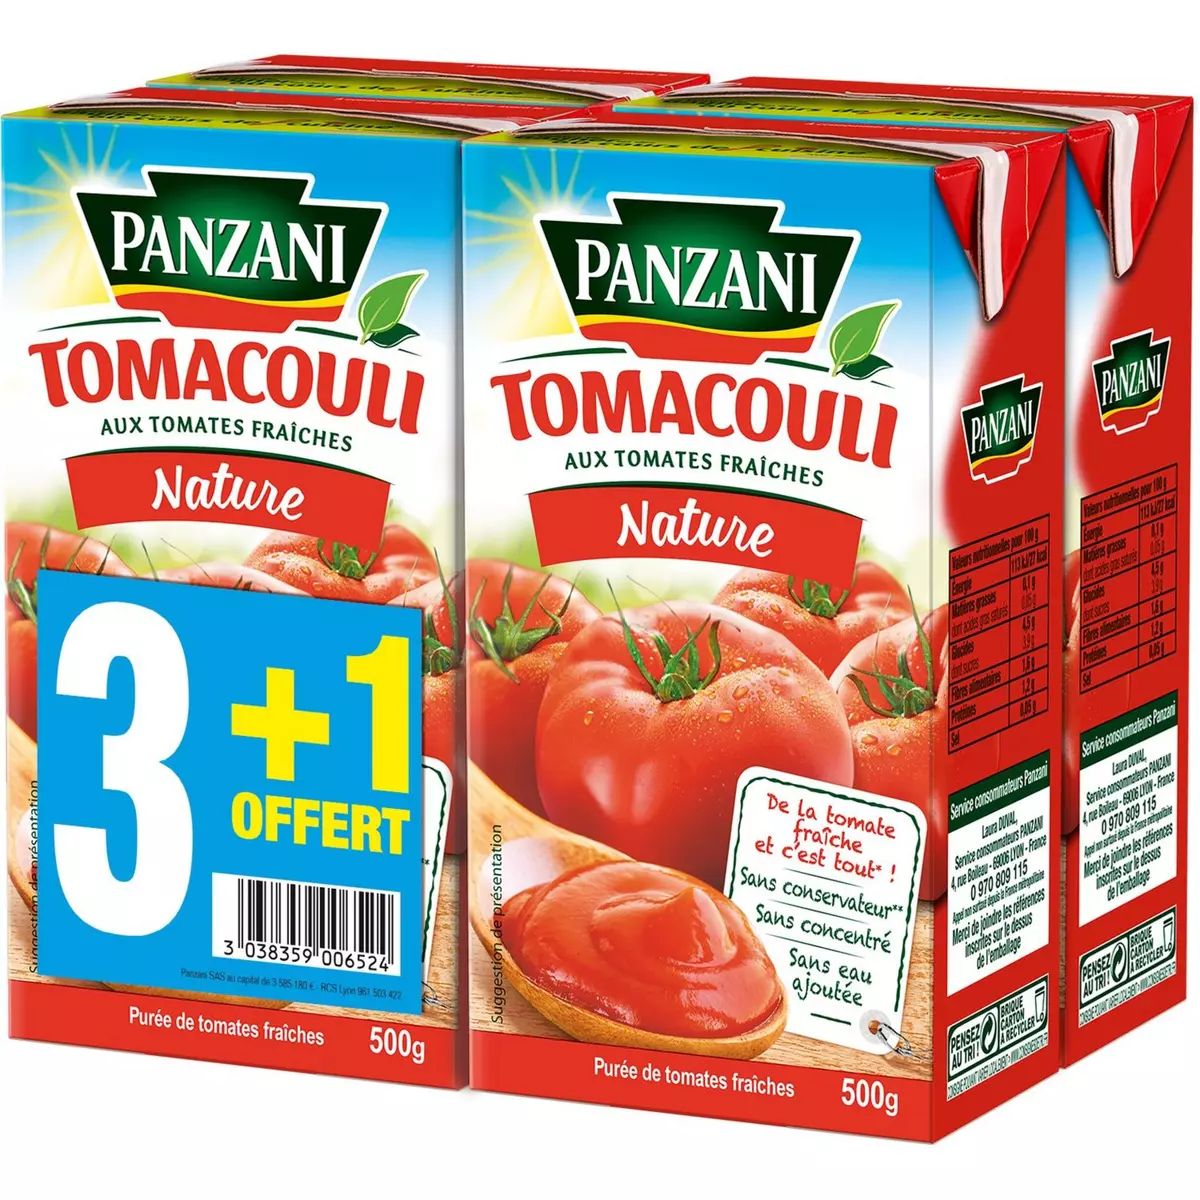 PANZANI Tomacouli purée de tomates fraîches 3x500g +1 offert